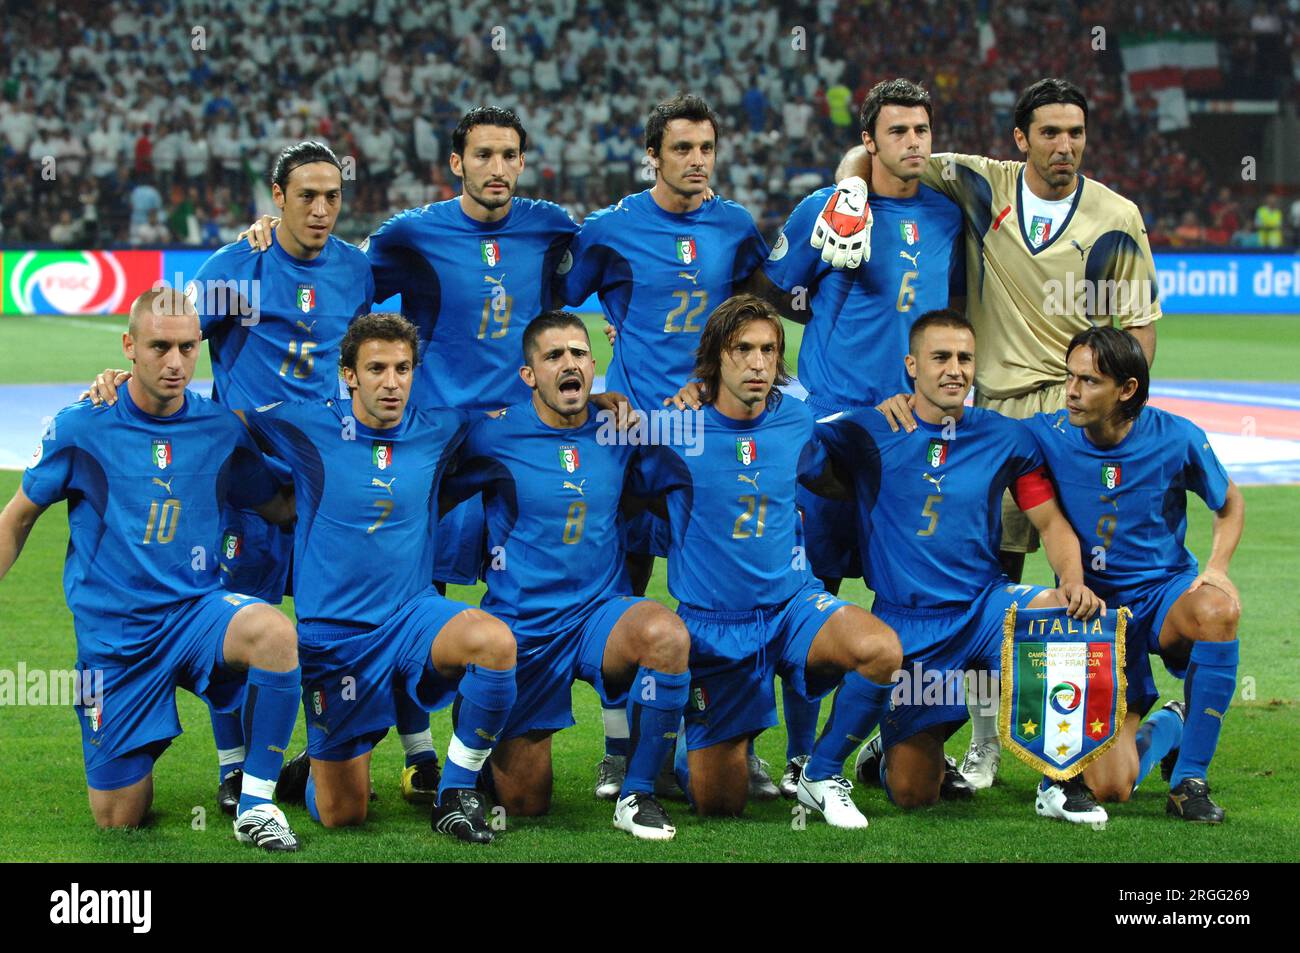 Milan Italie 2007-09-08, équipe nationale italienne de football avant le match Italie-France, qualification pour le Championnat d'Europe de football 2008 Banque D'Images